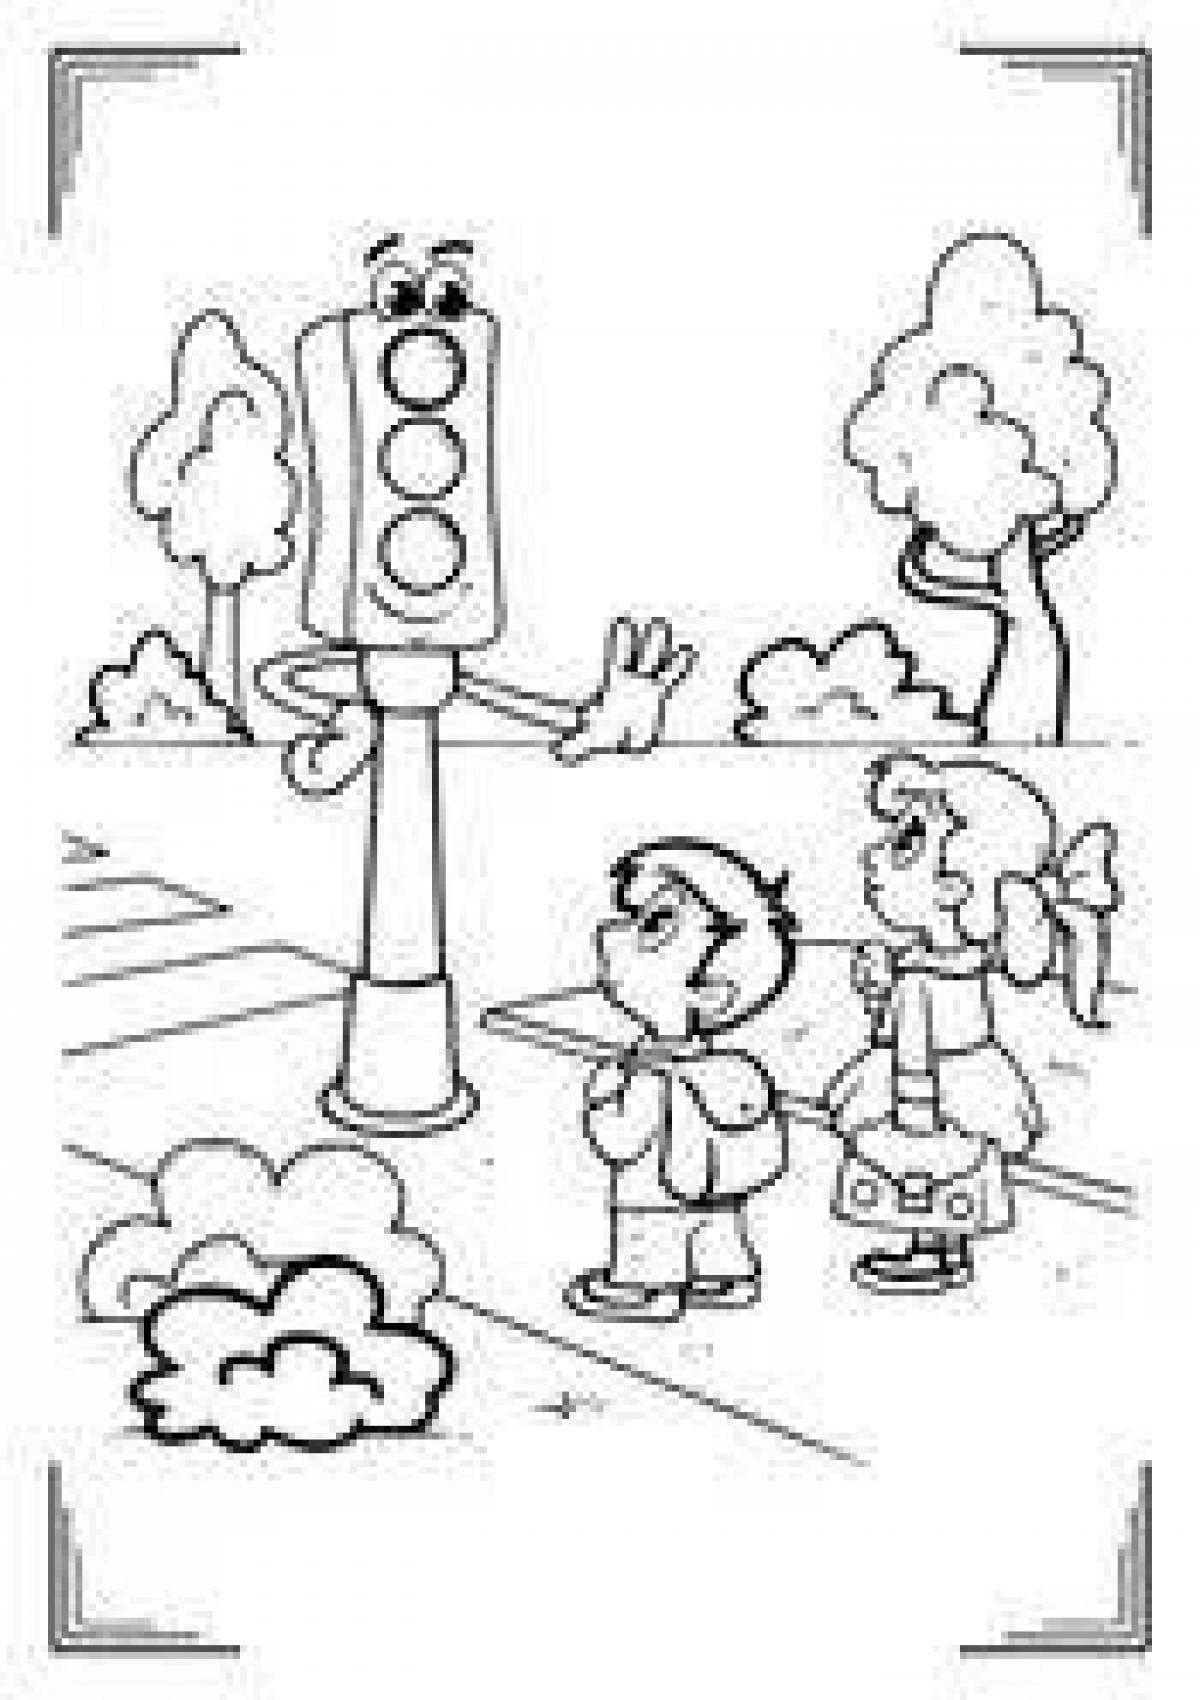 Traffic light for children 5 6 years old #21